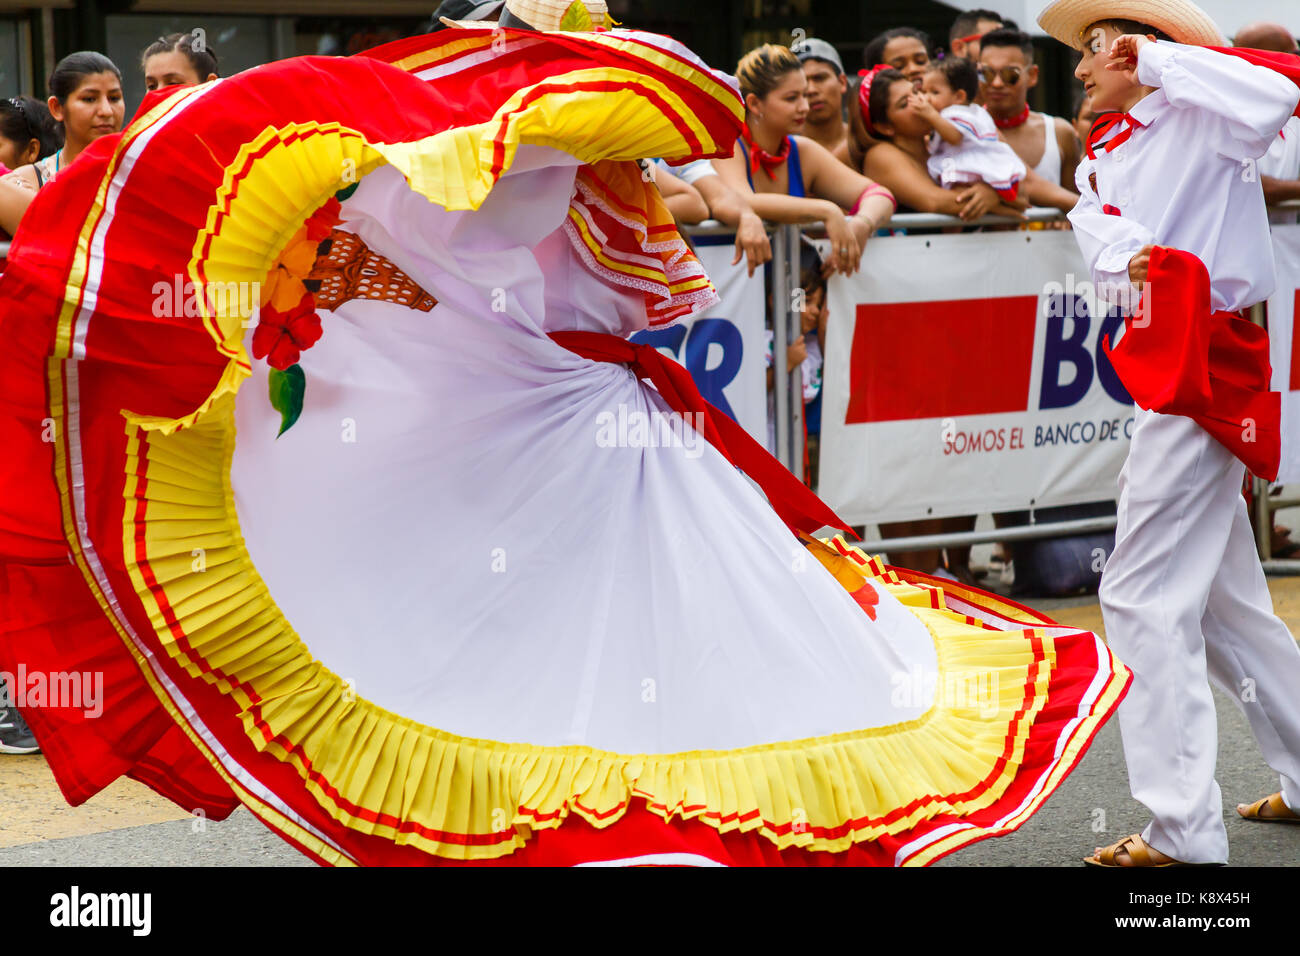 Bailarines en trajes tradicionales wow a los espectadores con sus bailes  tradicionales durante el desfile del Día de la independencia en Quepos,  Costa Rica Fotografía de stock - Alamy